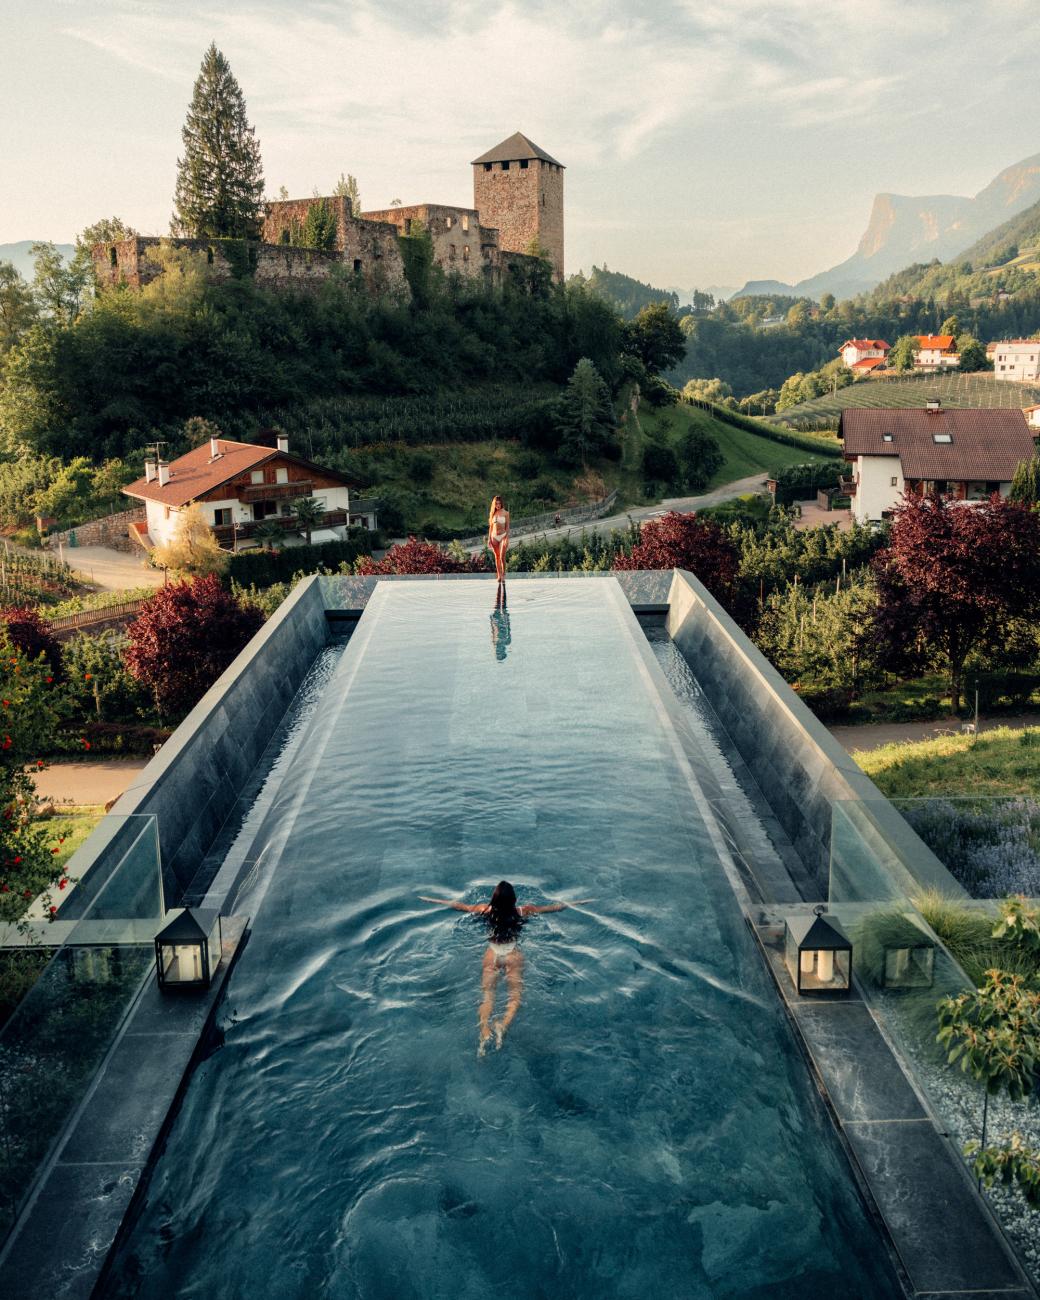 Langer Pool, in dem eine Frau schwimmt mit Blick auf eine Burg